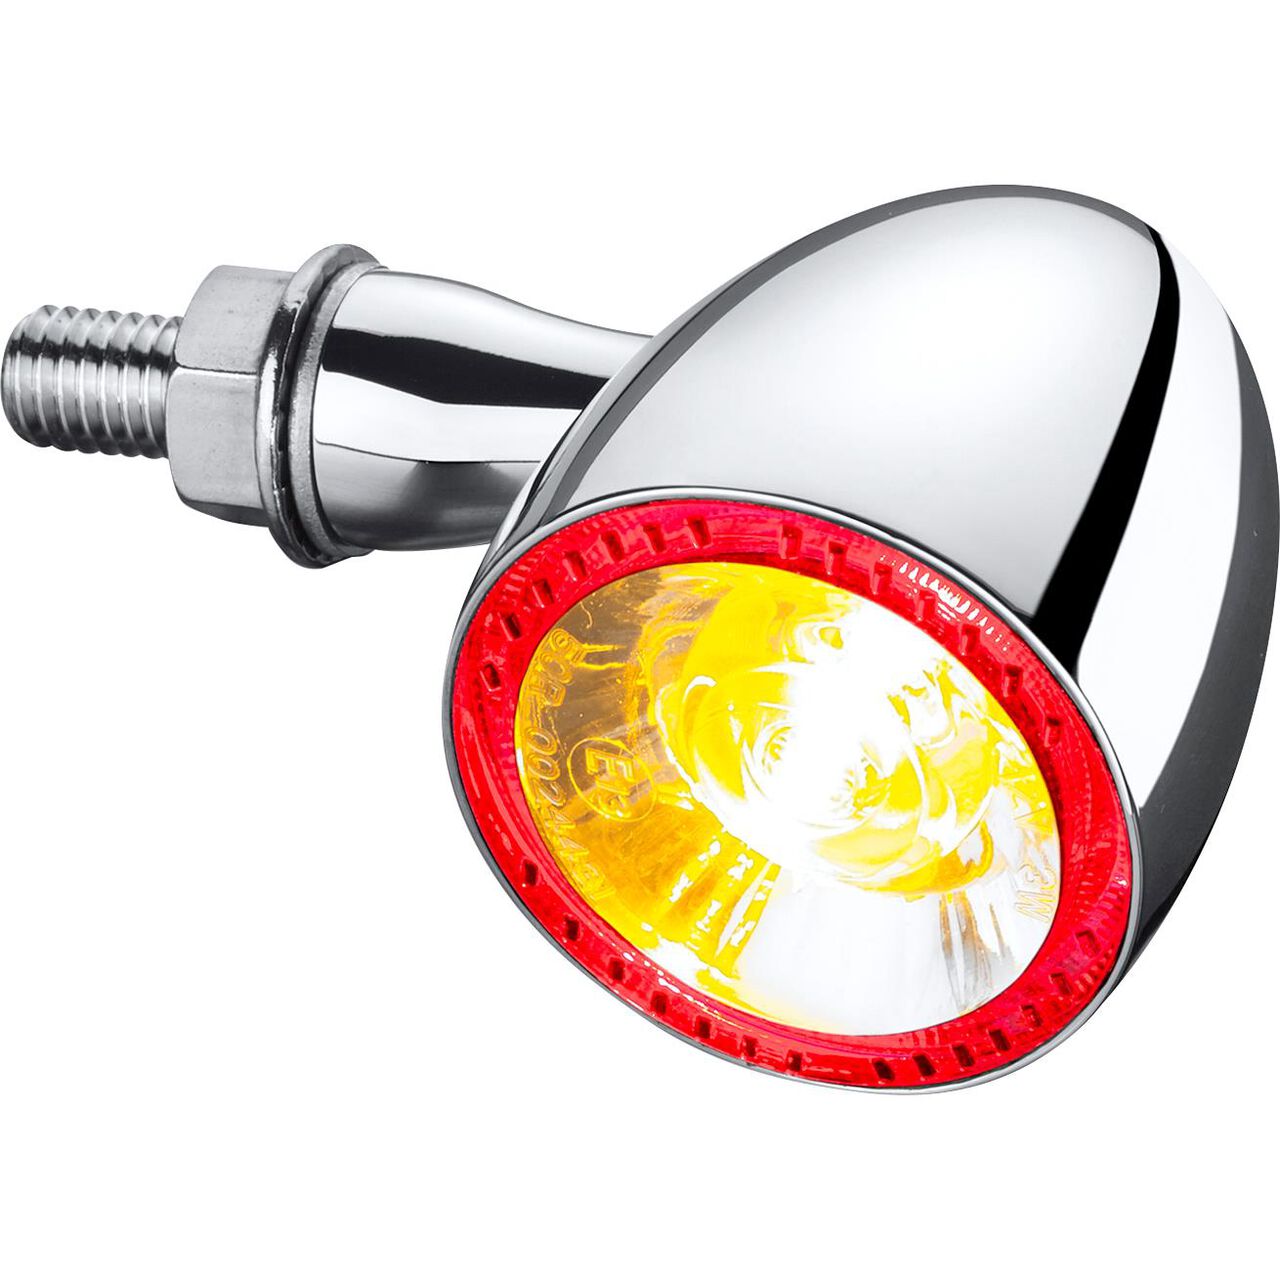 Kaufe Universal LED Motorrad Blinker Licht Blinkende Blinker Flexible Dual  Farbe DRL Motor Blink Ring Gabel Streifen Lampe